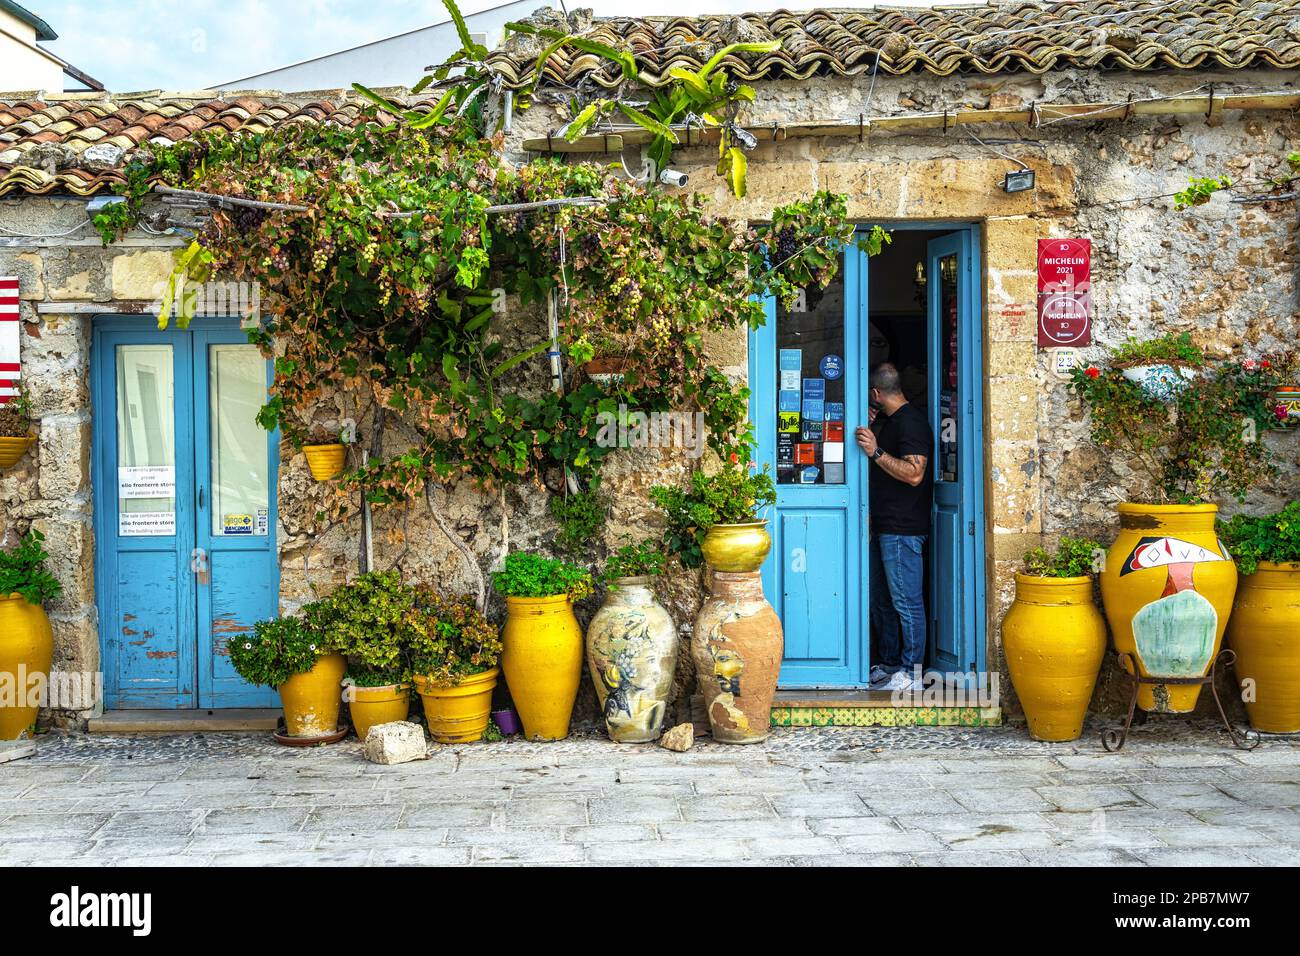 Vislumbra el pueblo costero siciliano de Marzamemi con las casas que ahora se han convertido en restaurantes y tiendas de recuerdos. Marzamemi, Sicilia Foto de stock